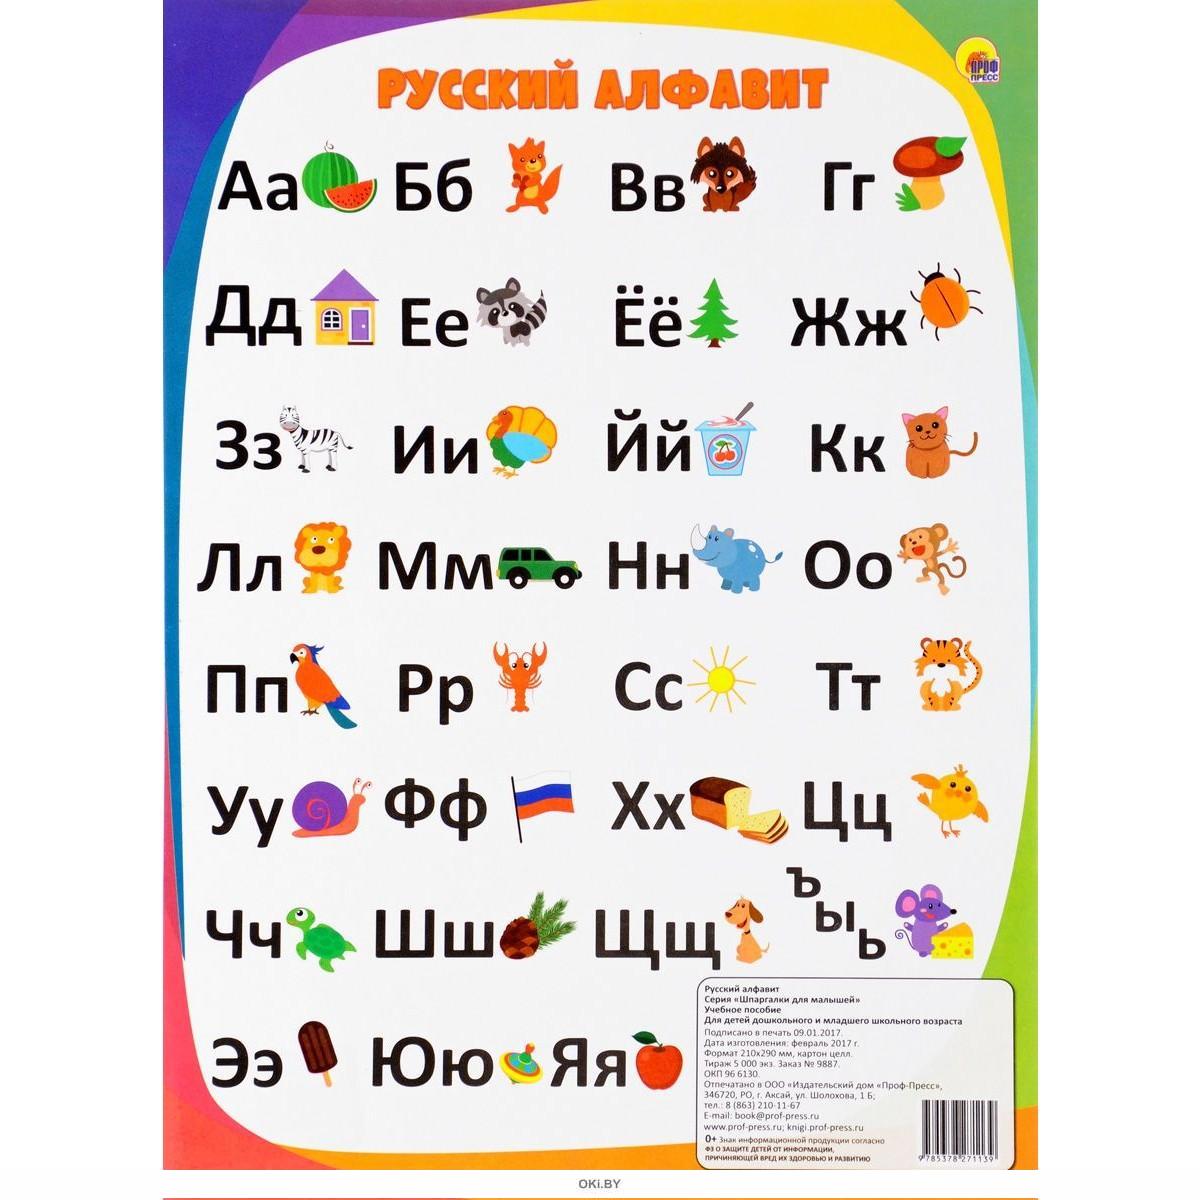 Сайт азбука аудио. Алфавит. Алфавит русского языка. Alфавит. Алфавит для детей.